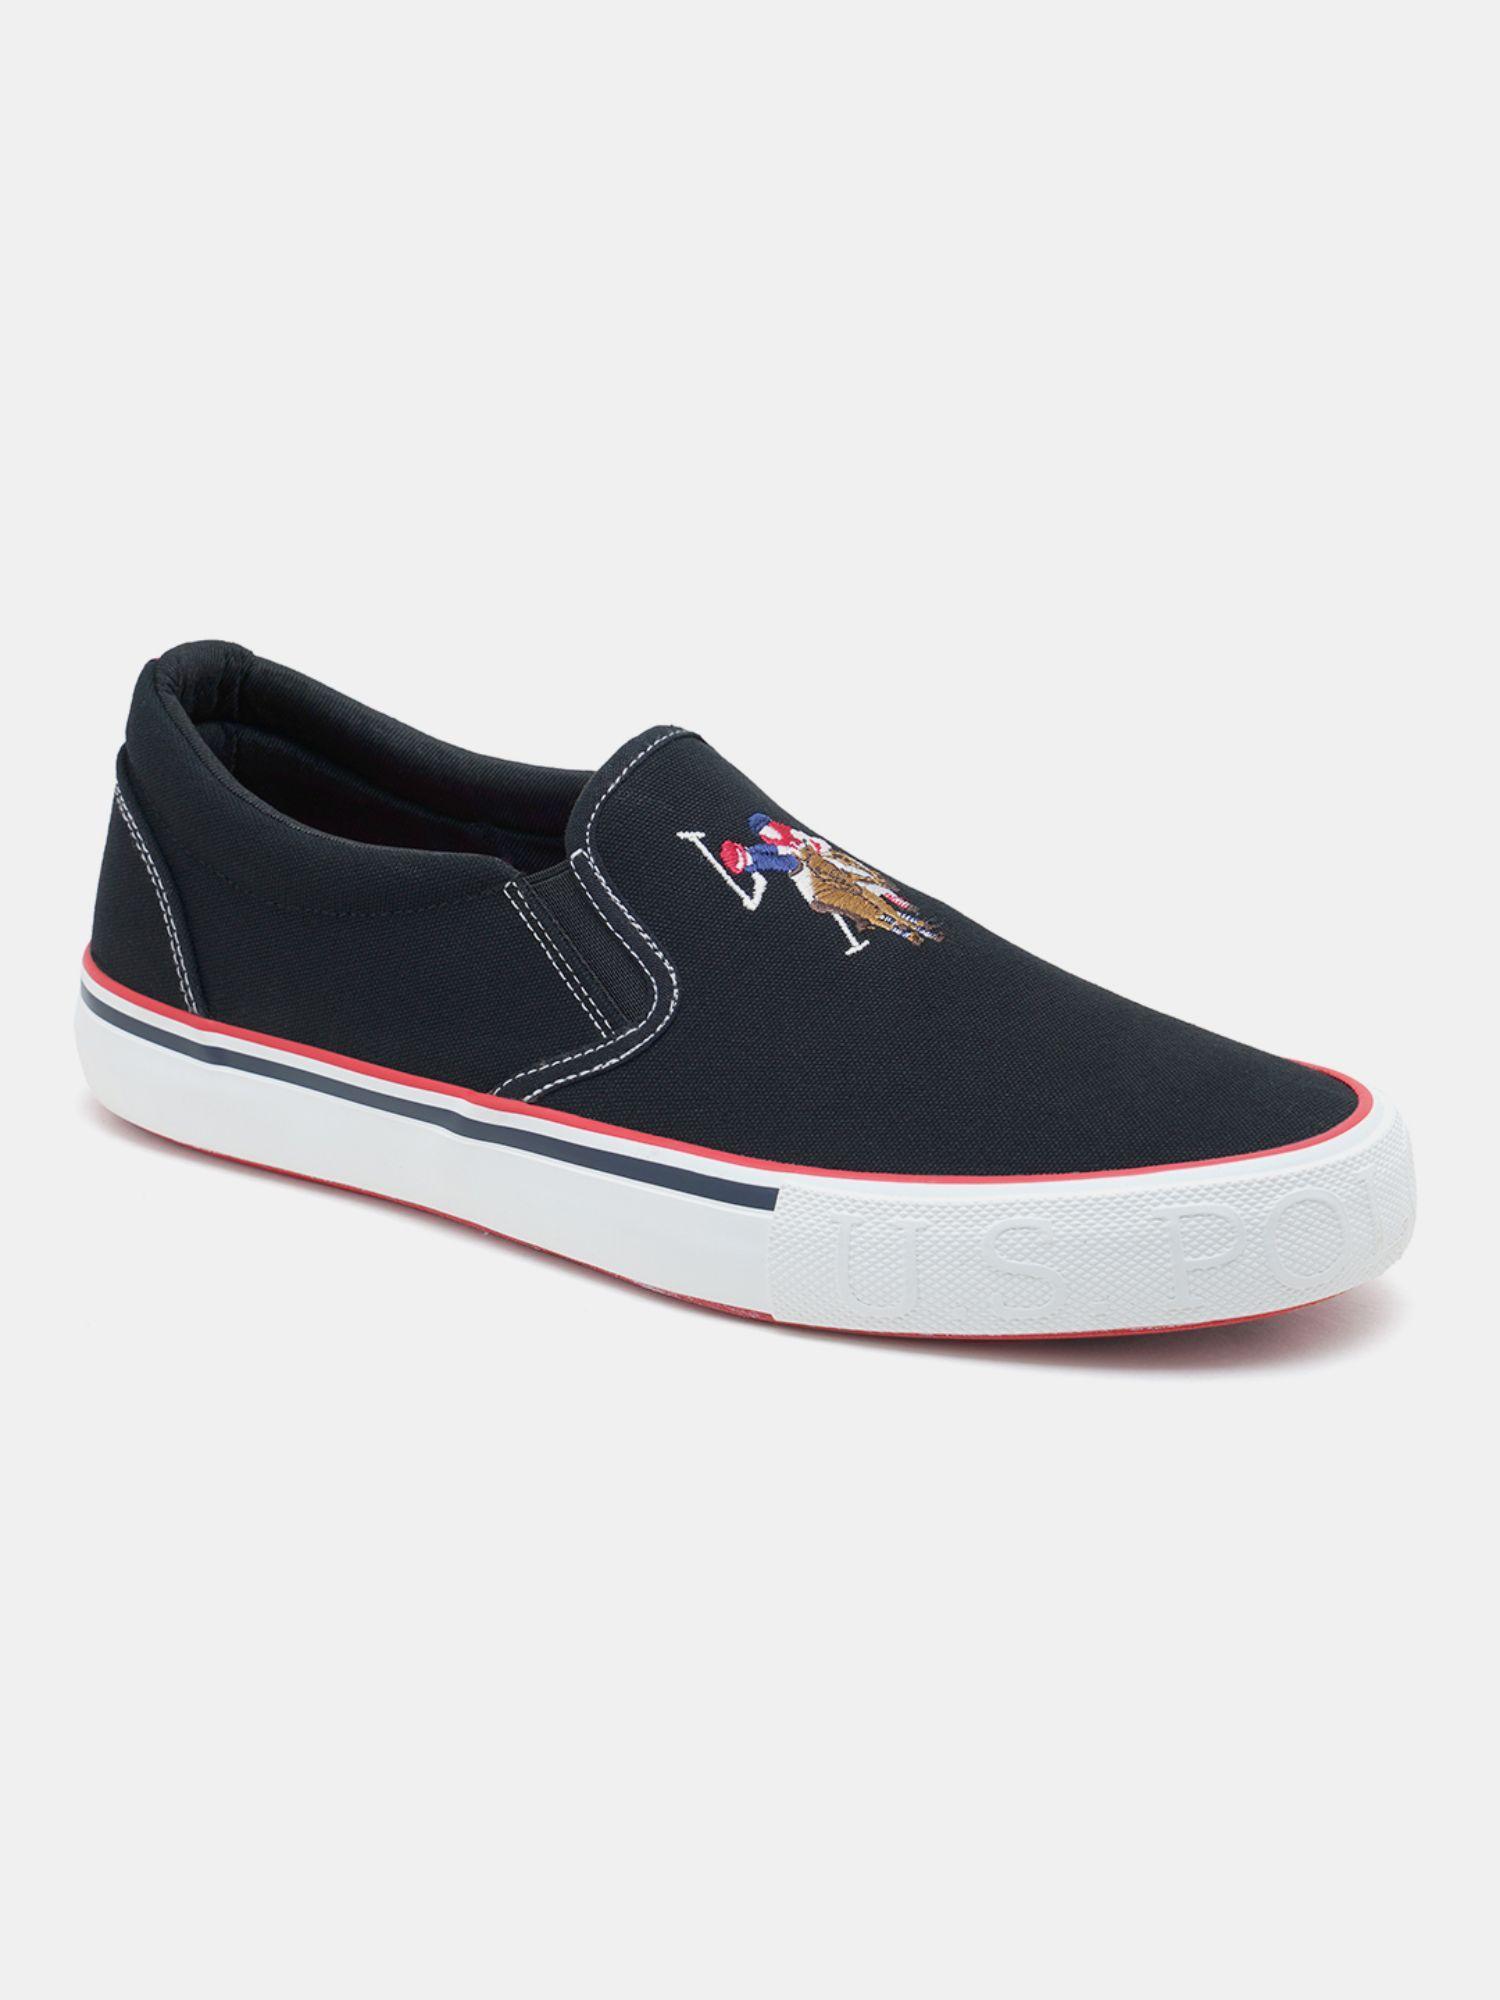 men-skye-black-slip-on-sneakers